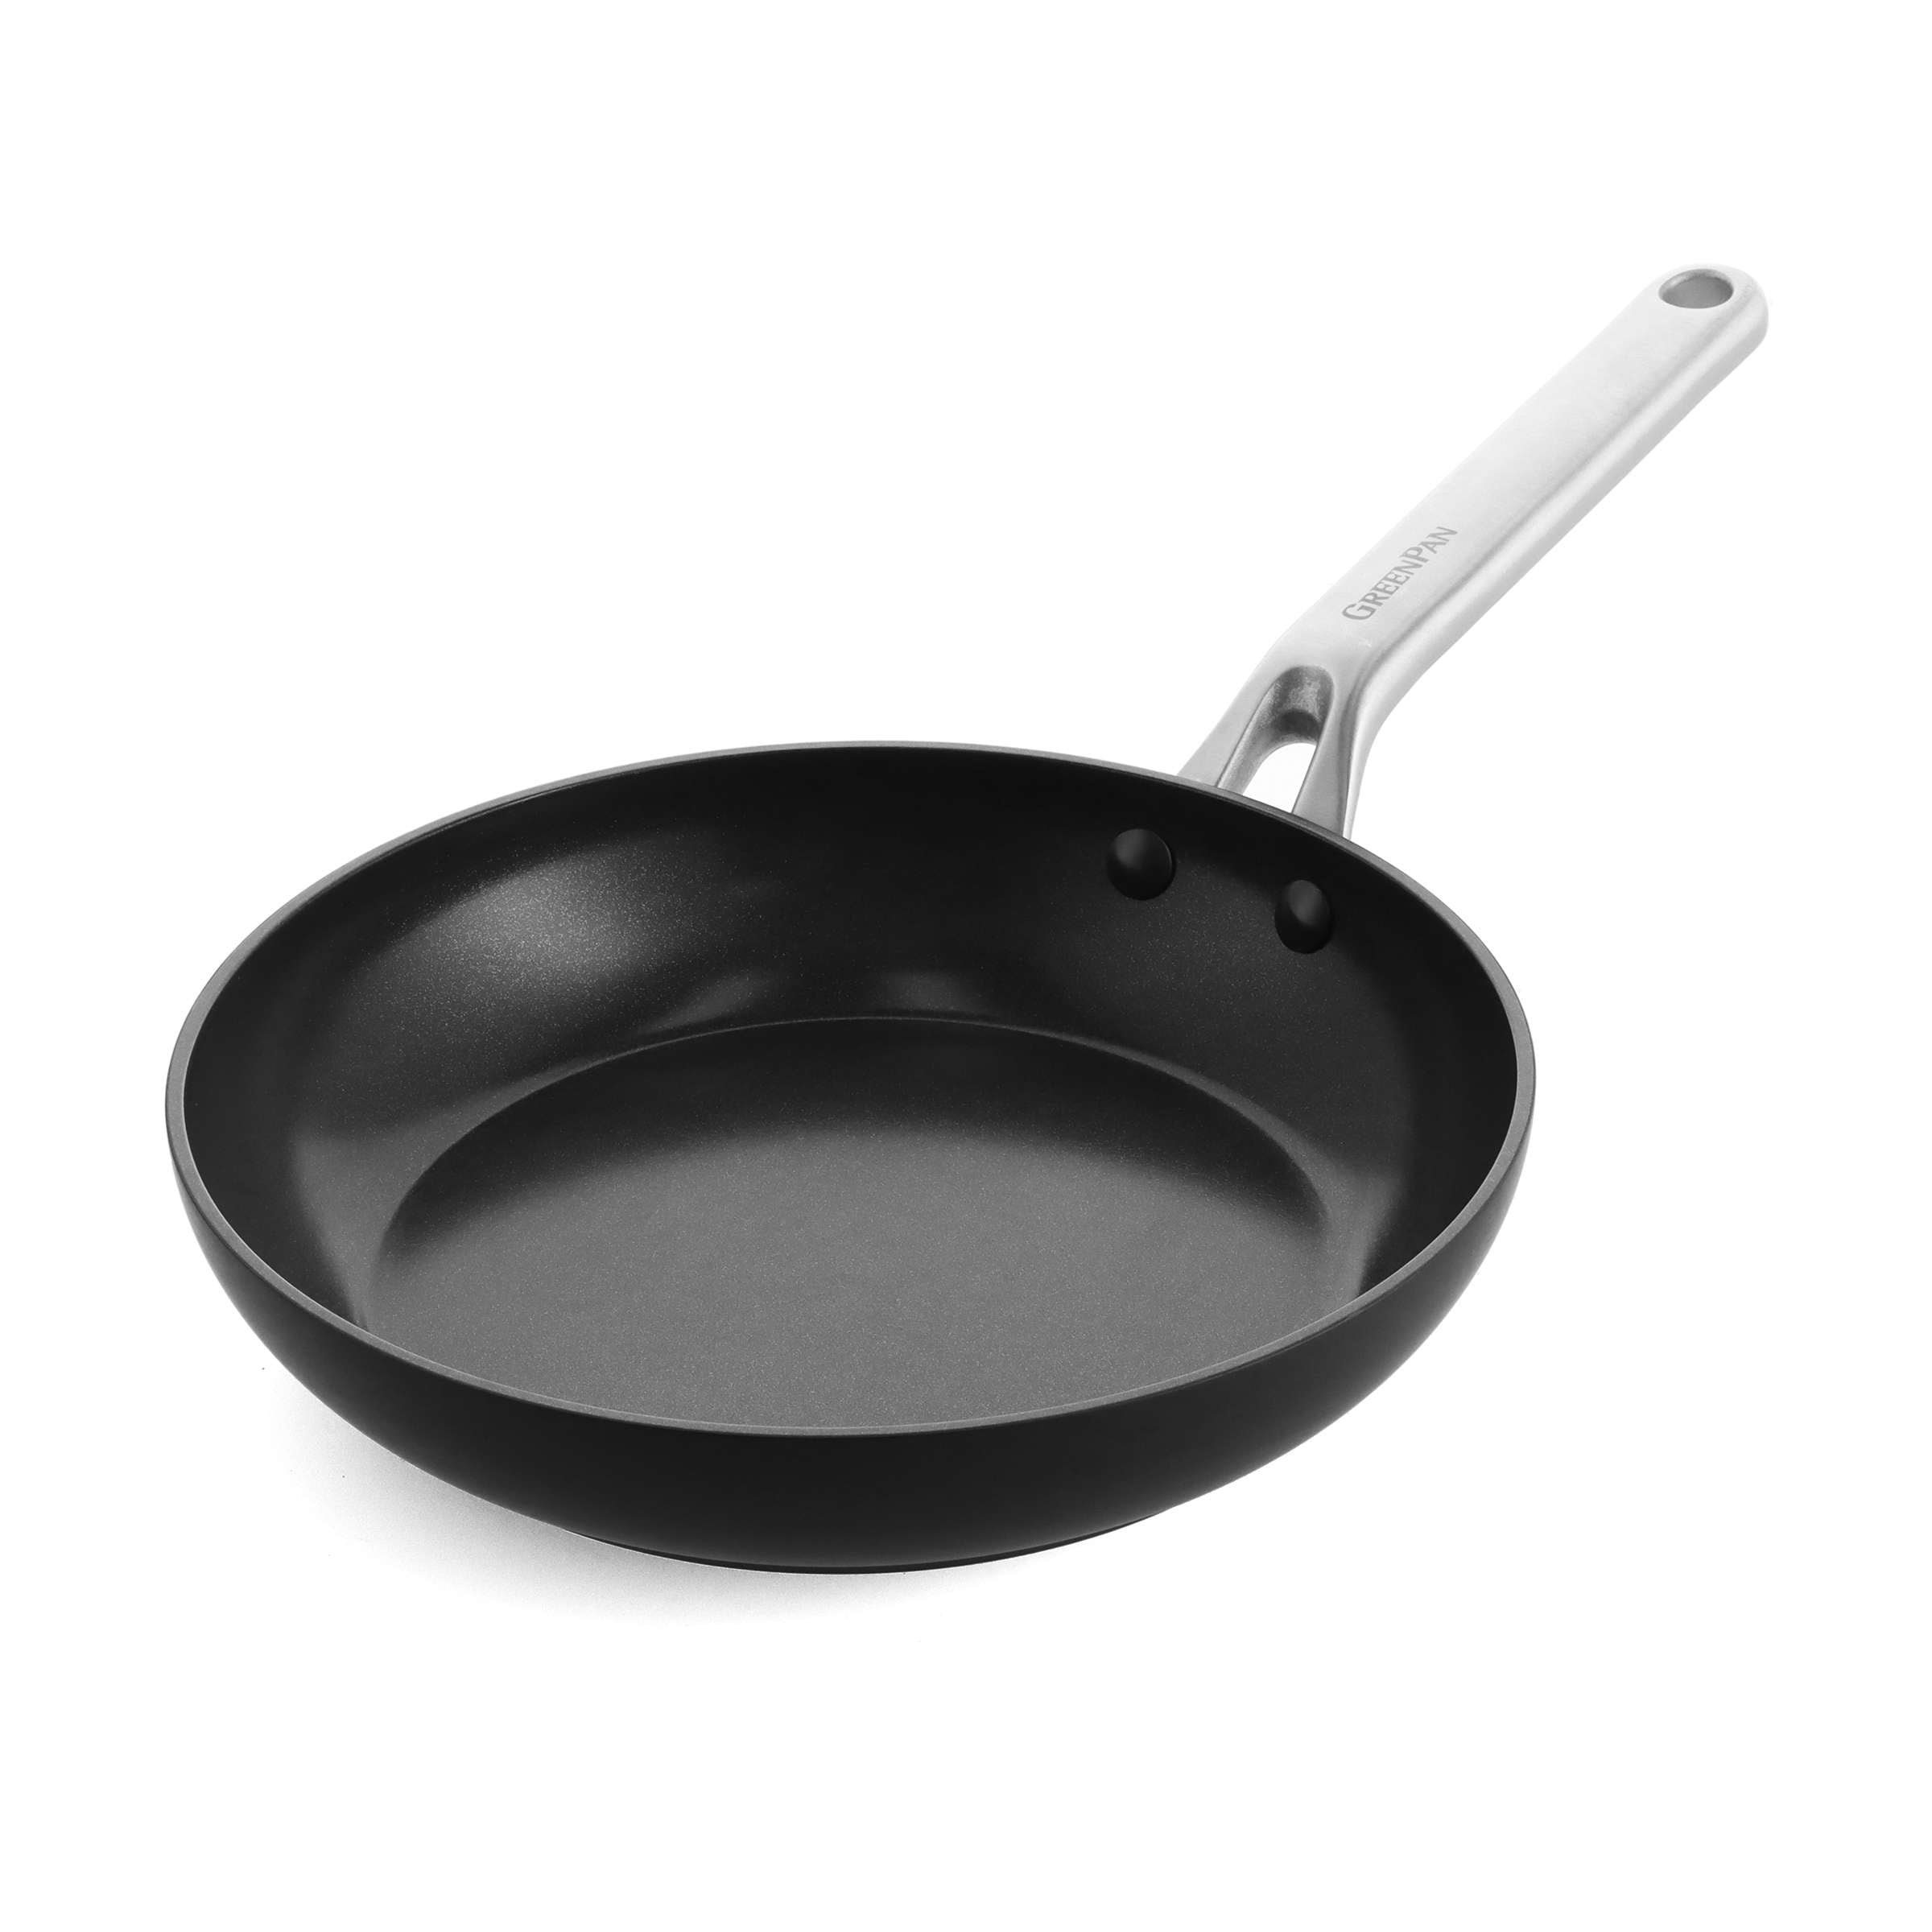 GreenPan Pancake Pan, Non Stick, Toxin Free Ceramic Frying Pan - Induction,  Oven & Dishwasher Safe Cookware - 28 cm, Black